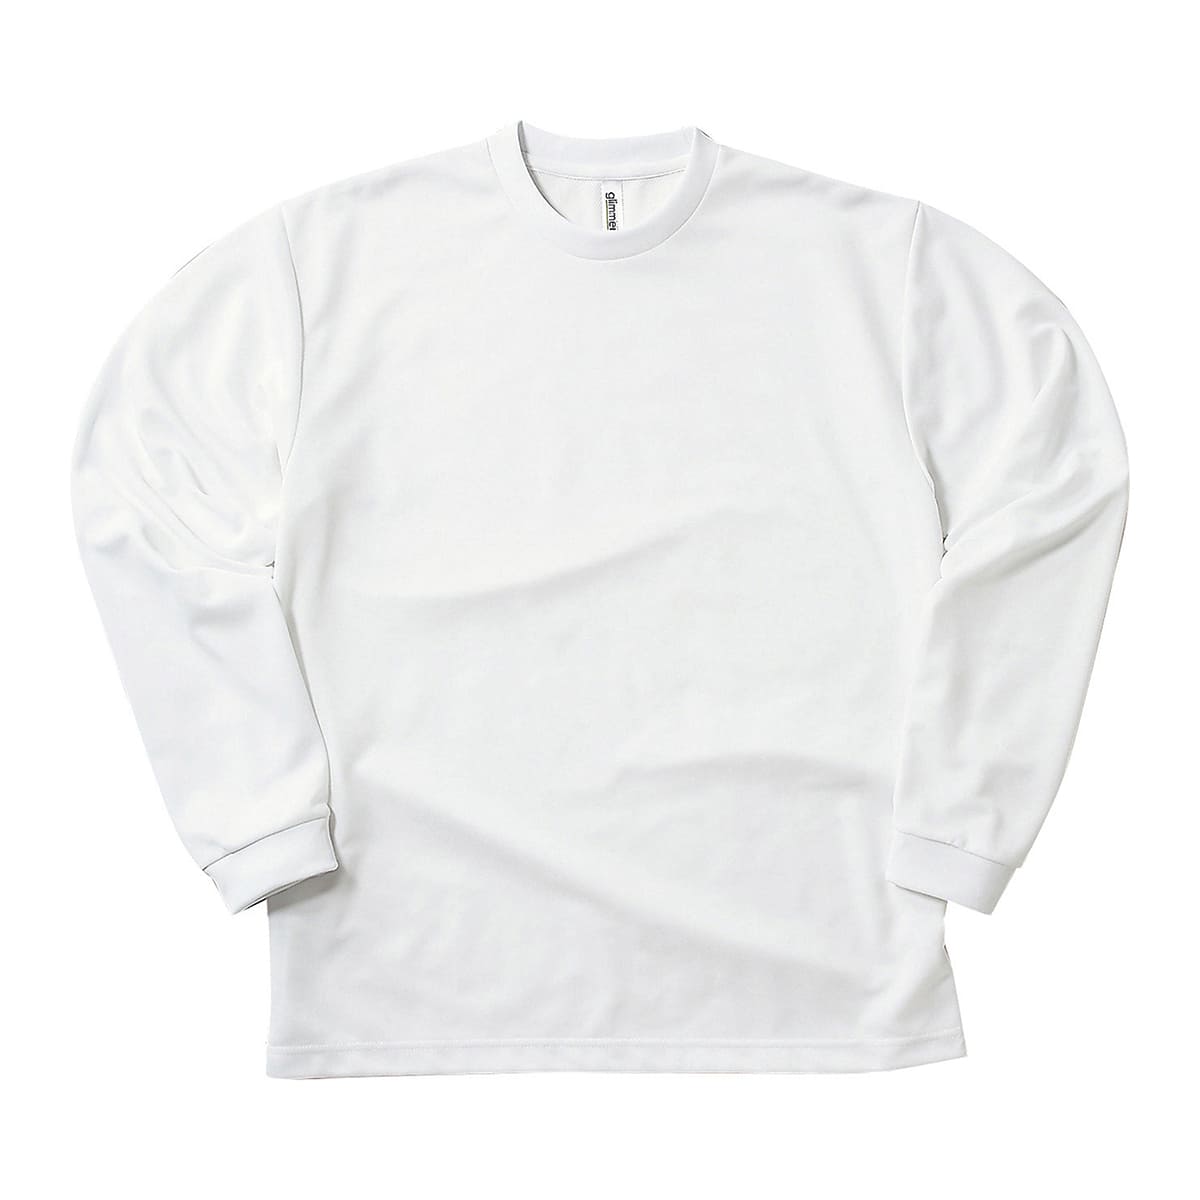 【パタゴニア】ロングスリーブロゴTシャツ(M)白黒2枚セット2枚セットで販売しております